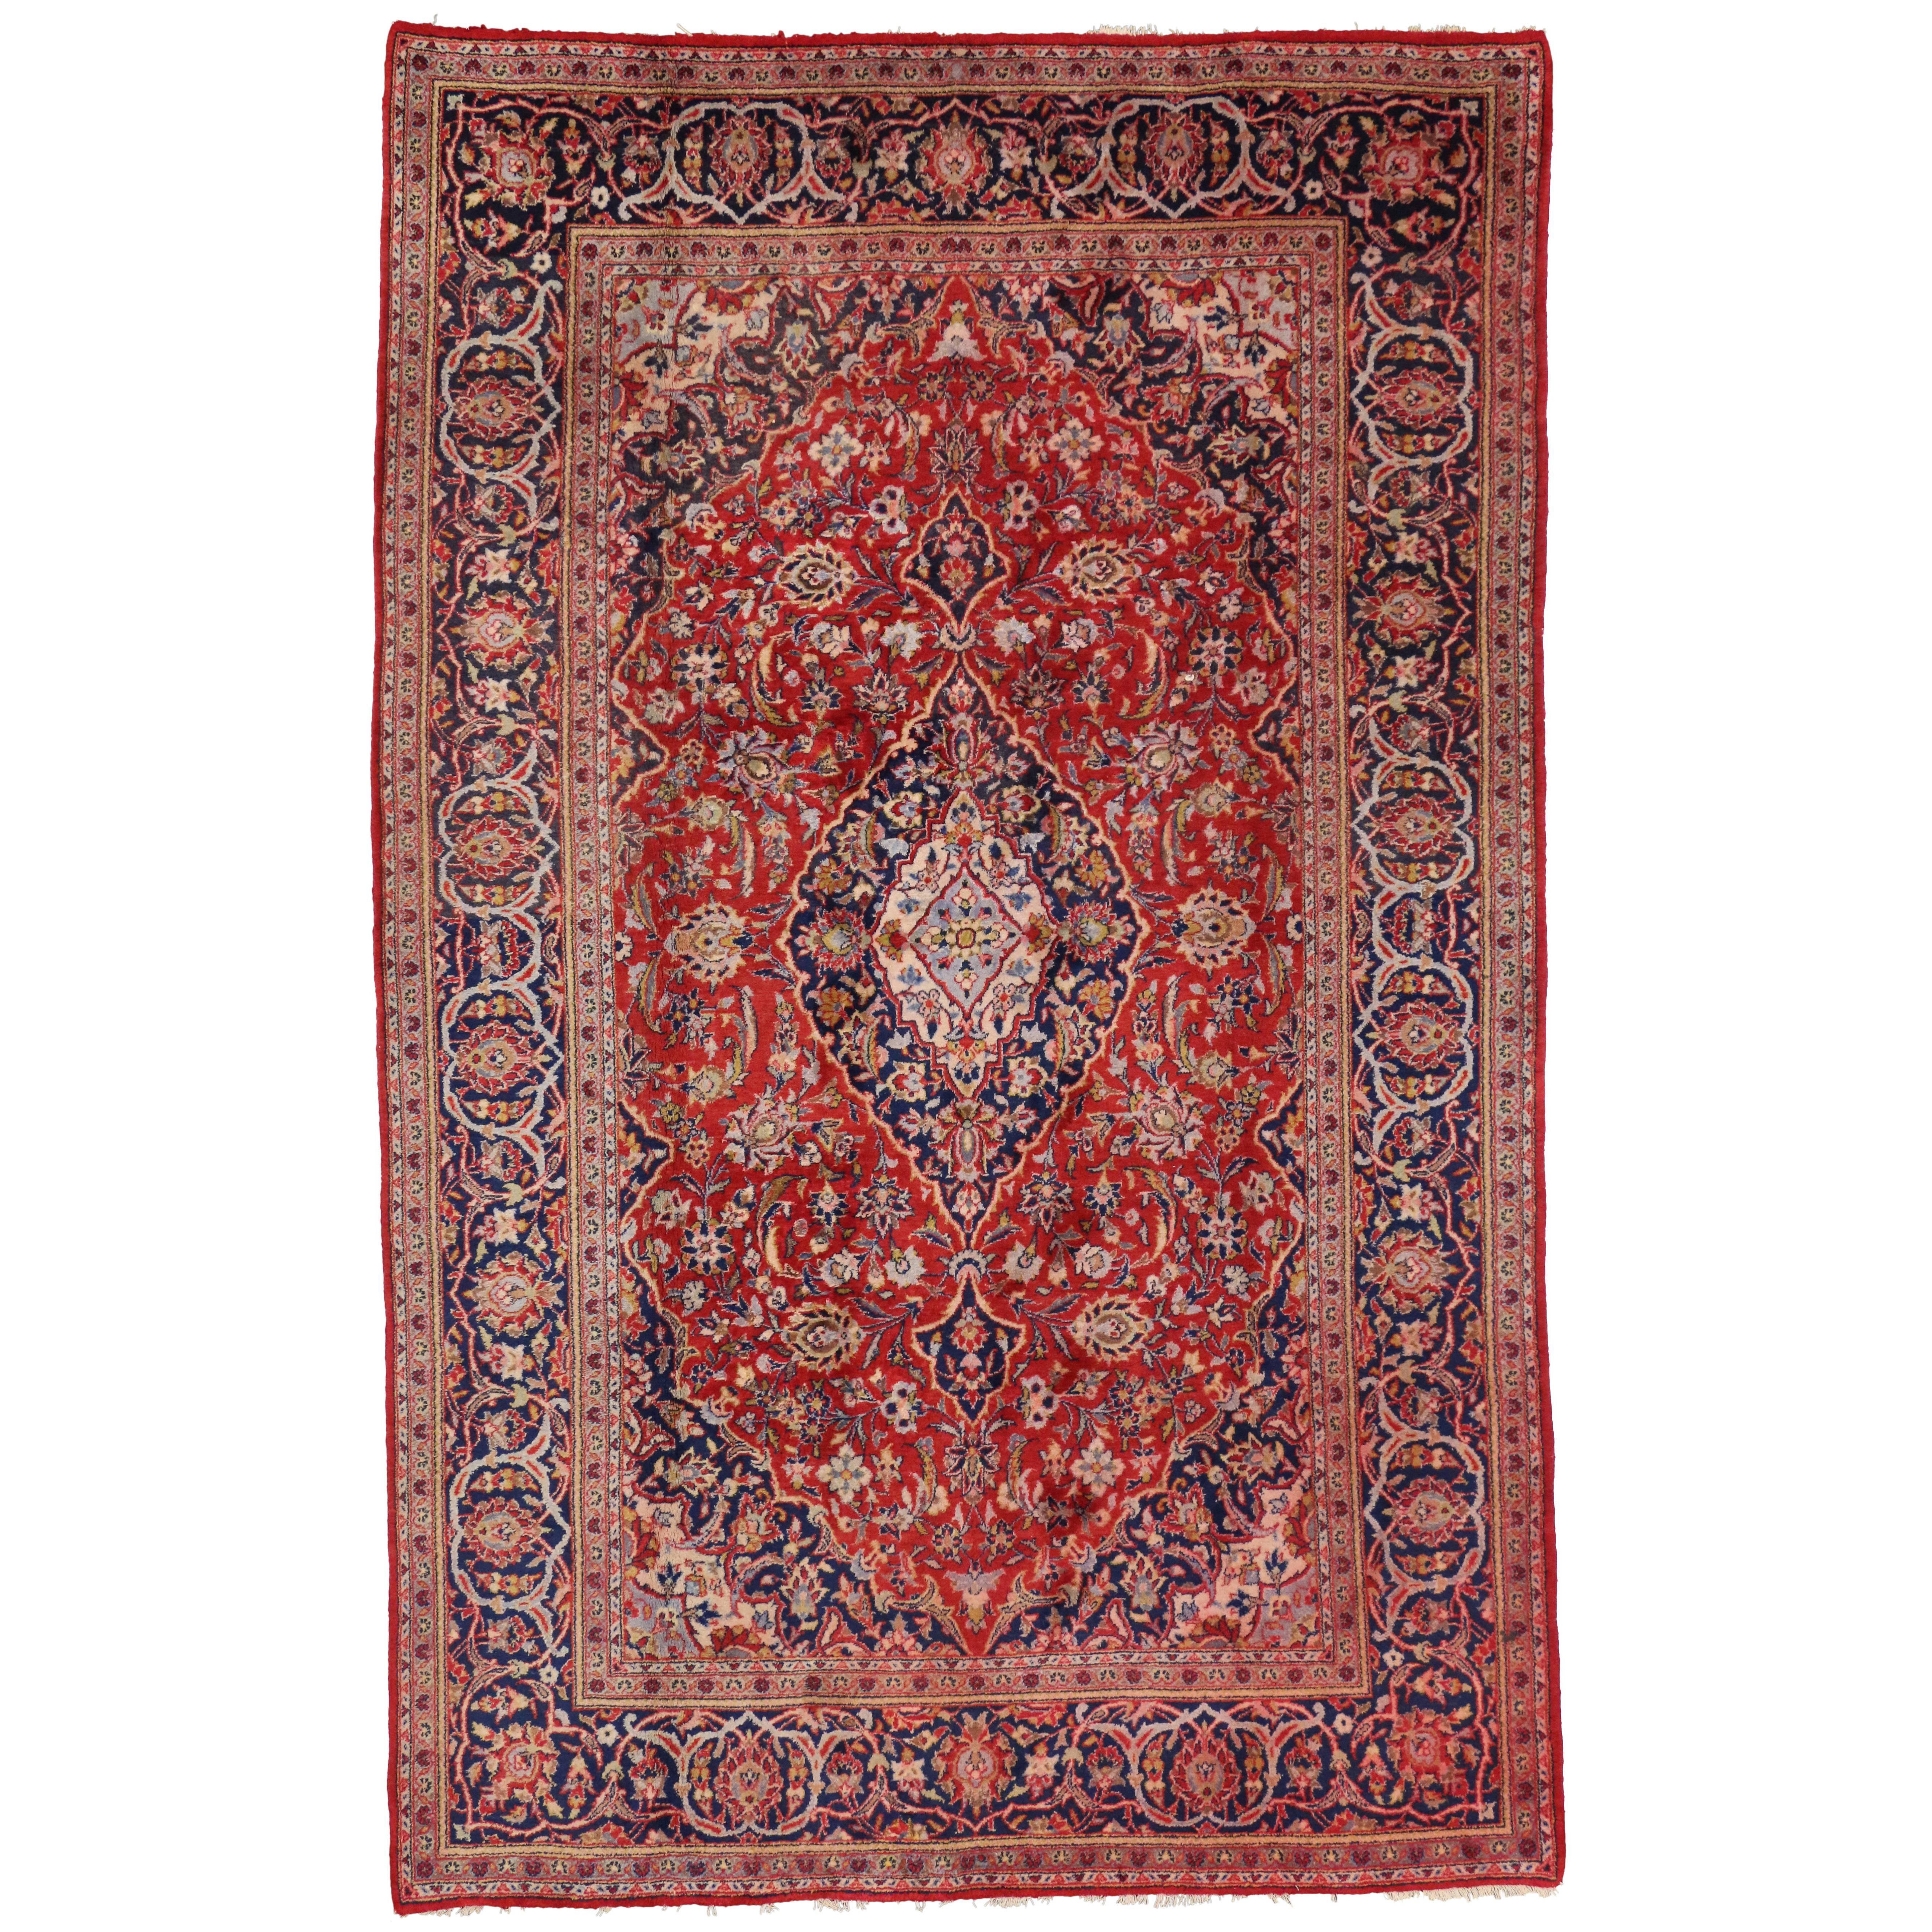 Persischer Kashan-Teppich im traditionellen Kolonial- und Federal-Stil im Vintage-Stil